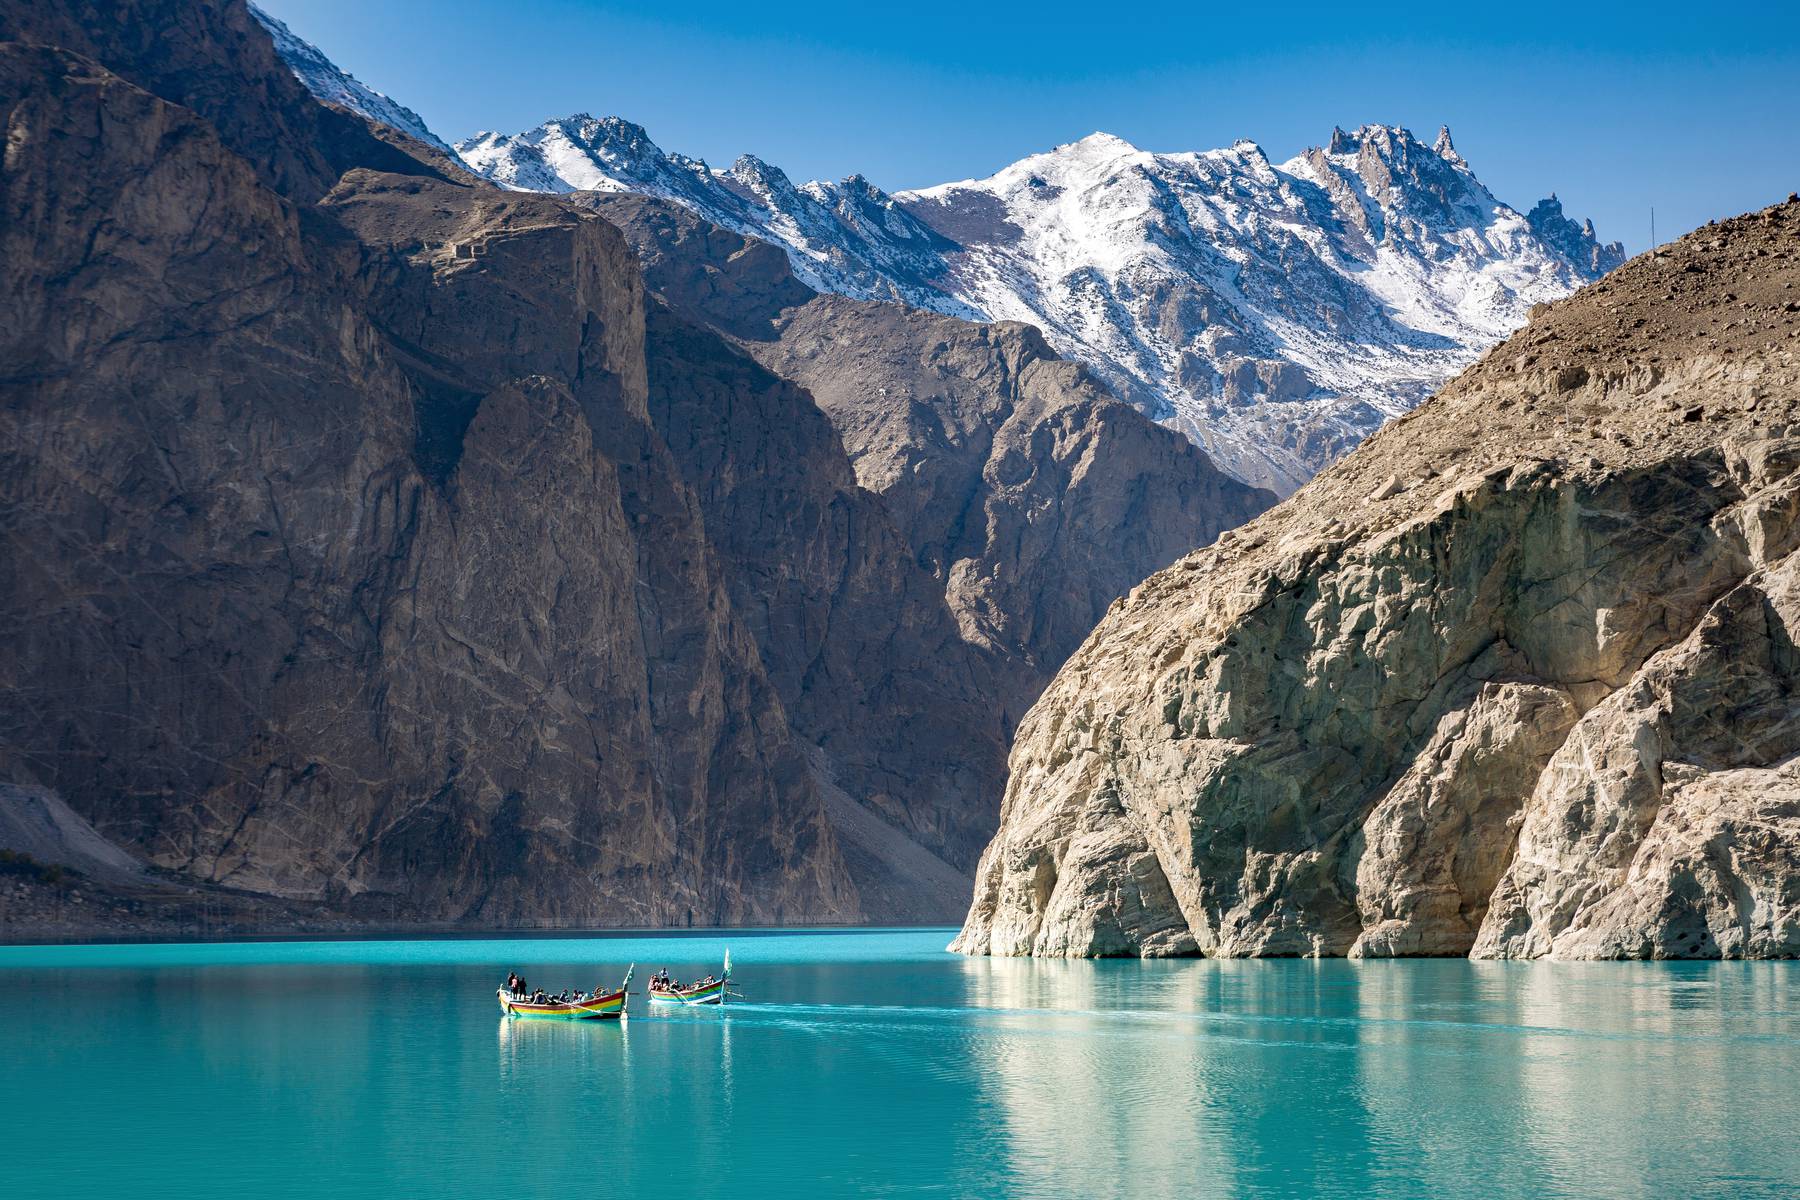 Du får ta en båttur på magiska sjön Attabad under resan till Pakistan